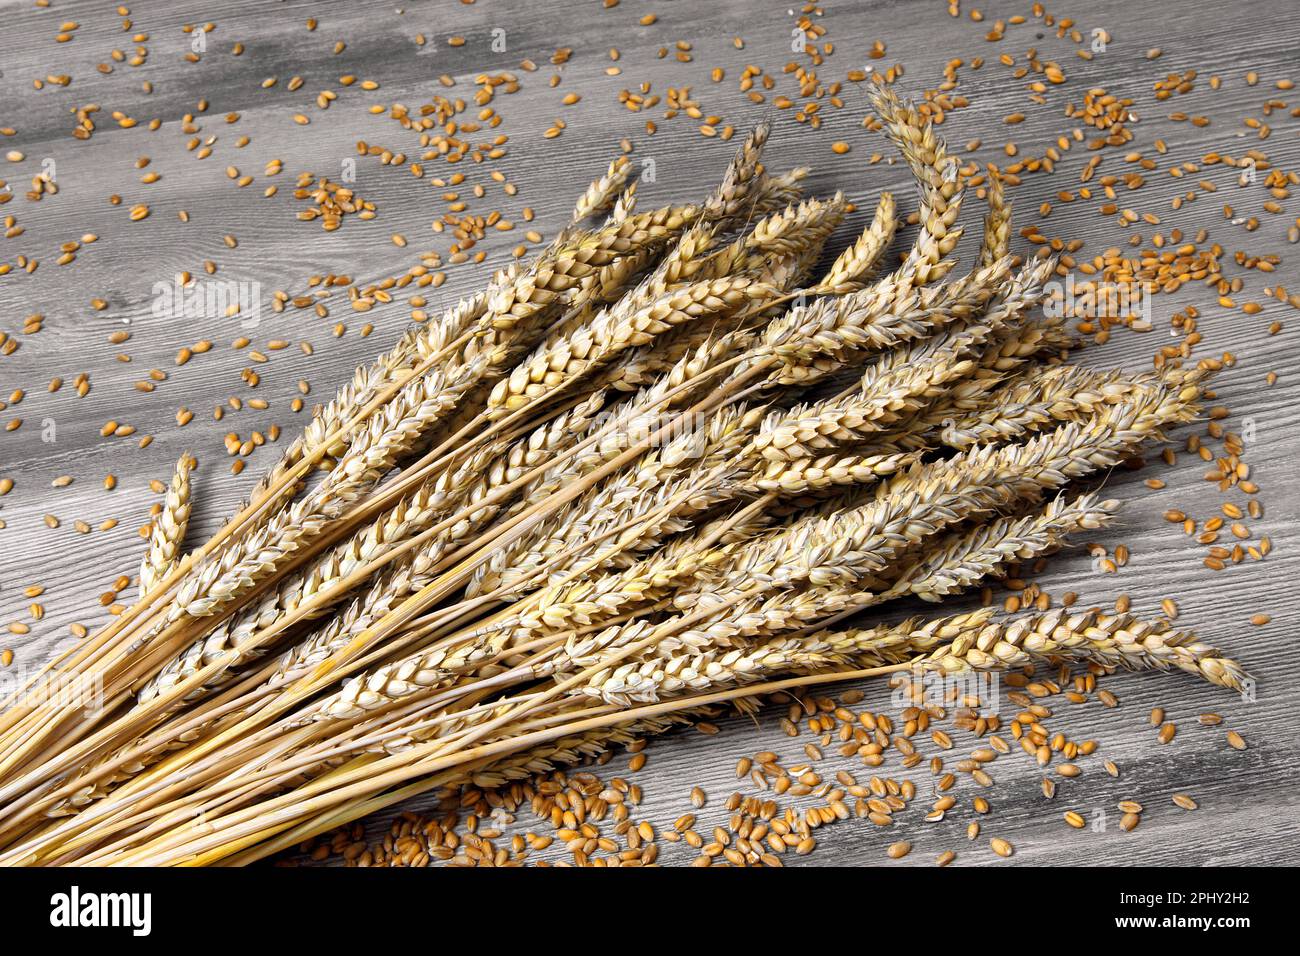 bread wheat, cultivated wheat (Triticum aestivum), bundel of wheat Stock Photo